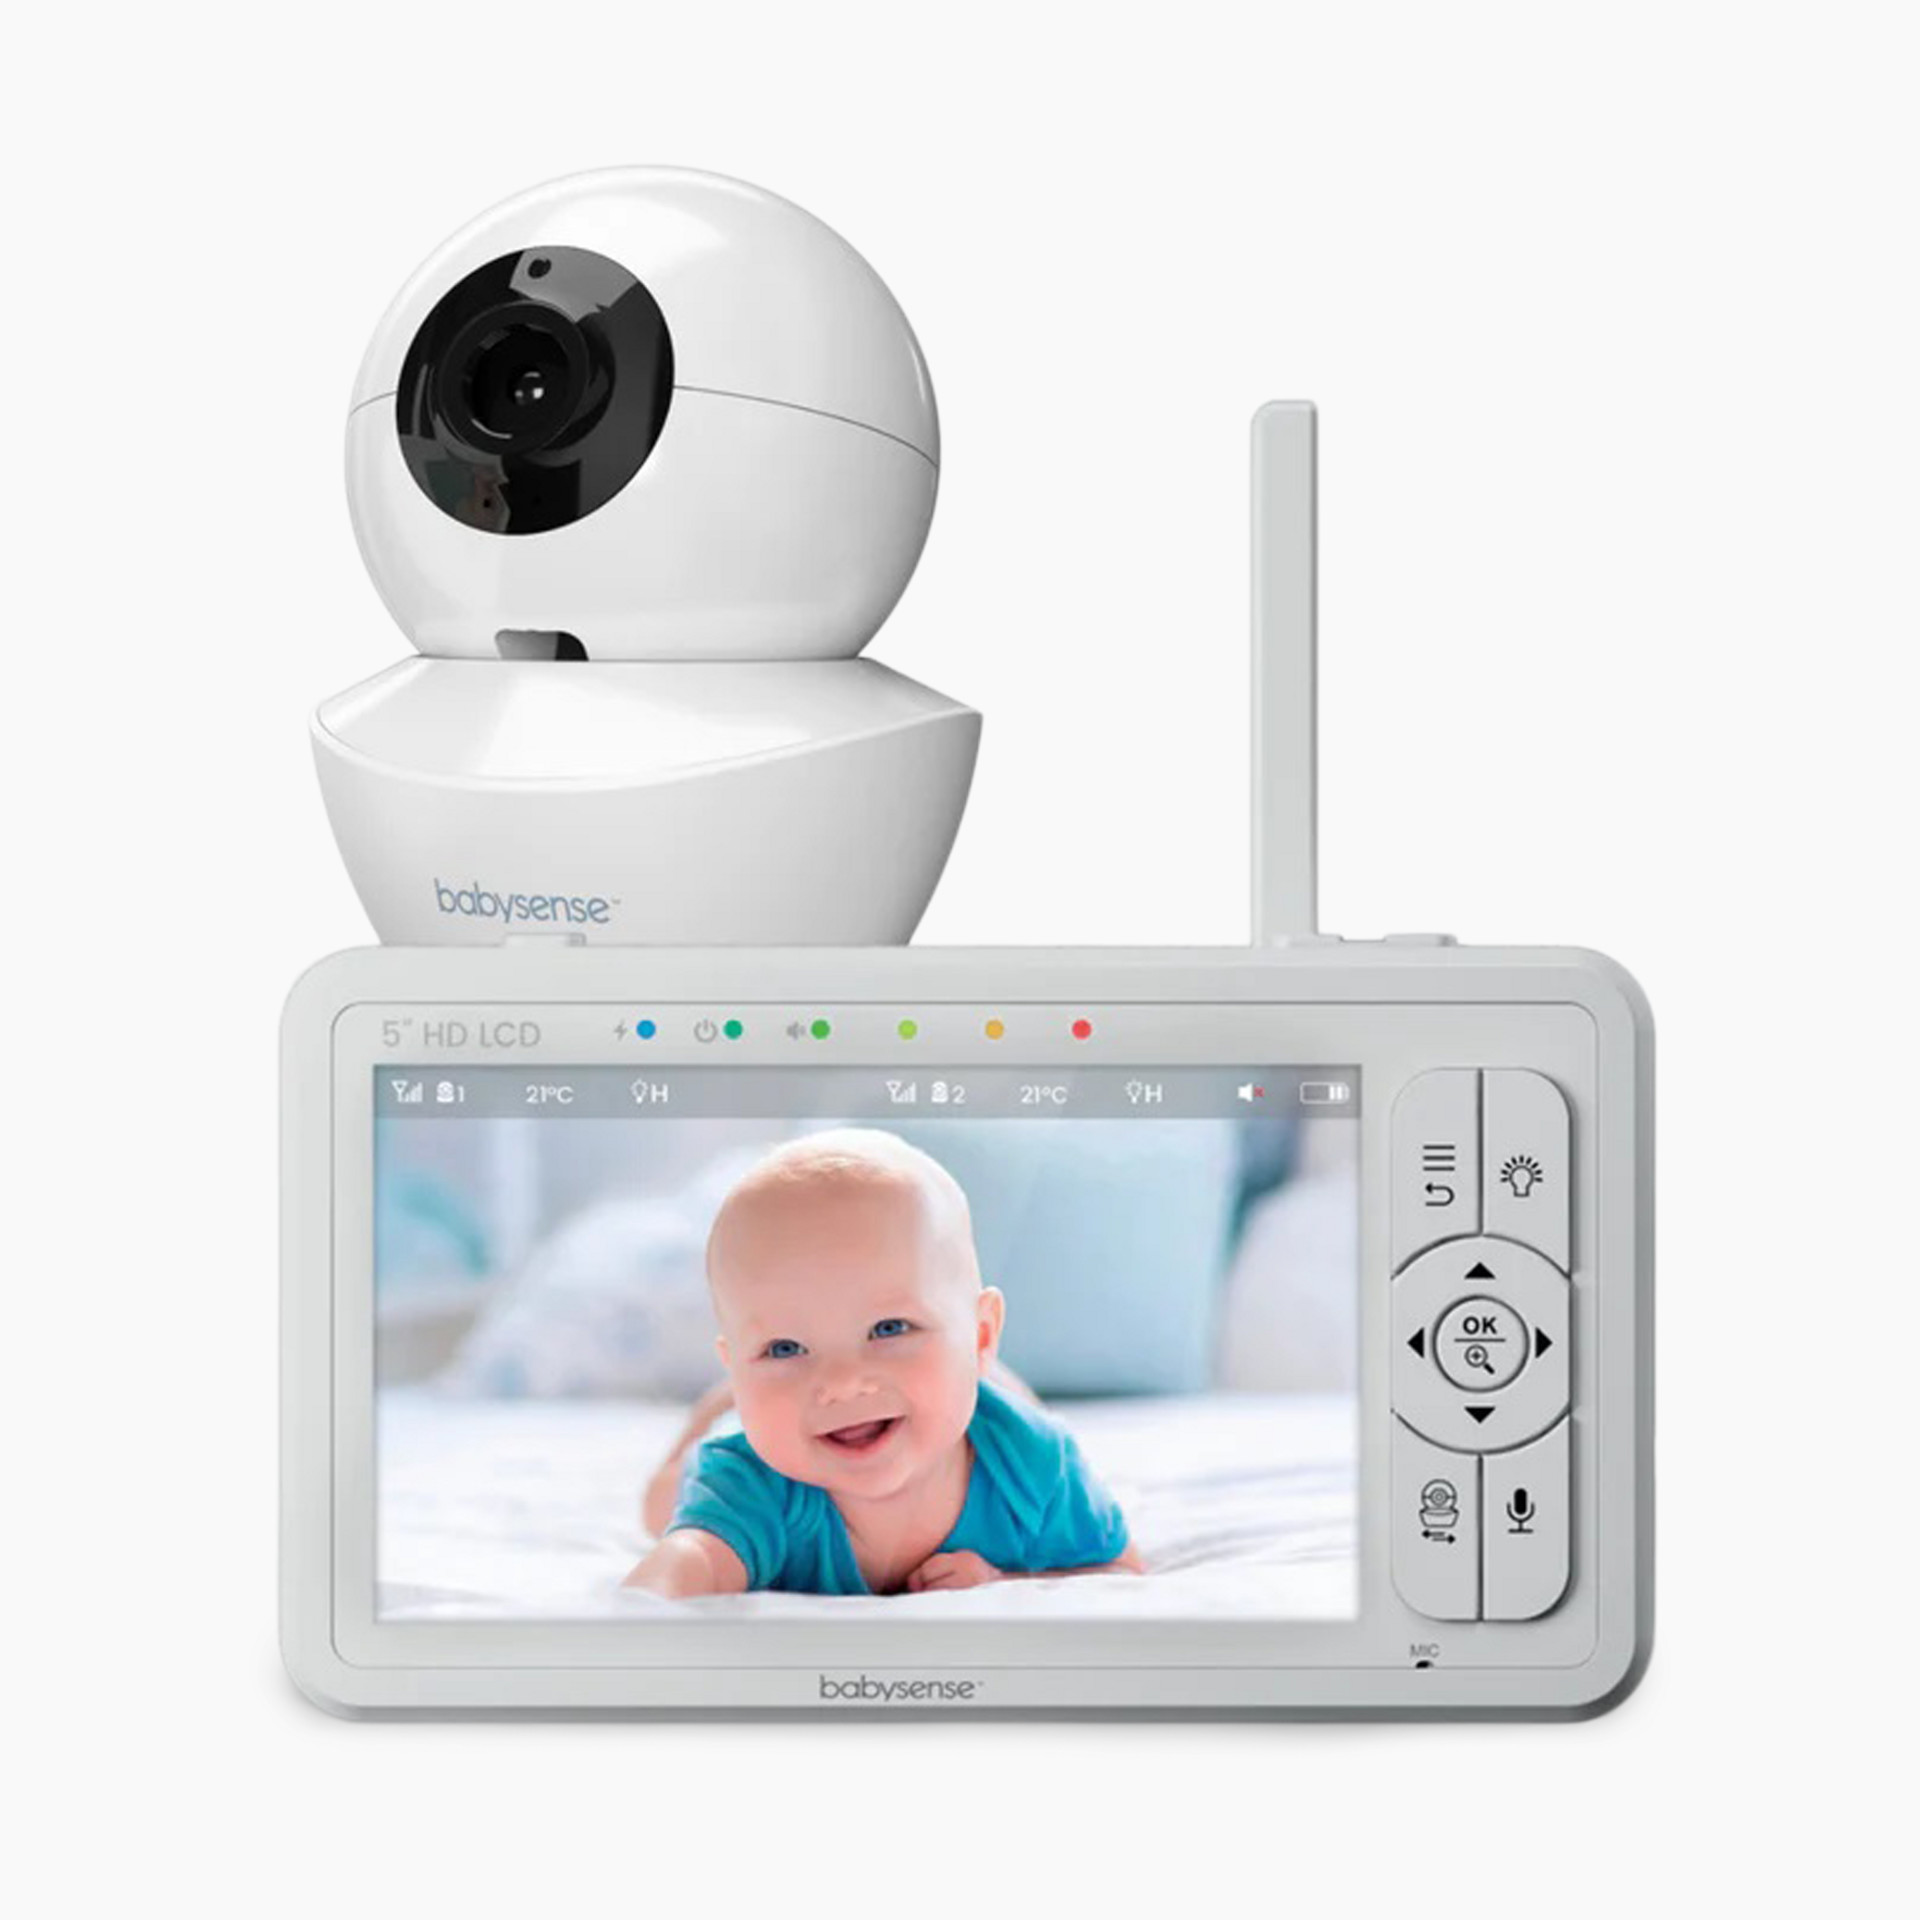 Babysense Camera Monitors for Kids